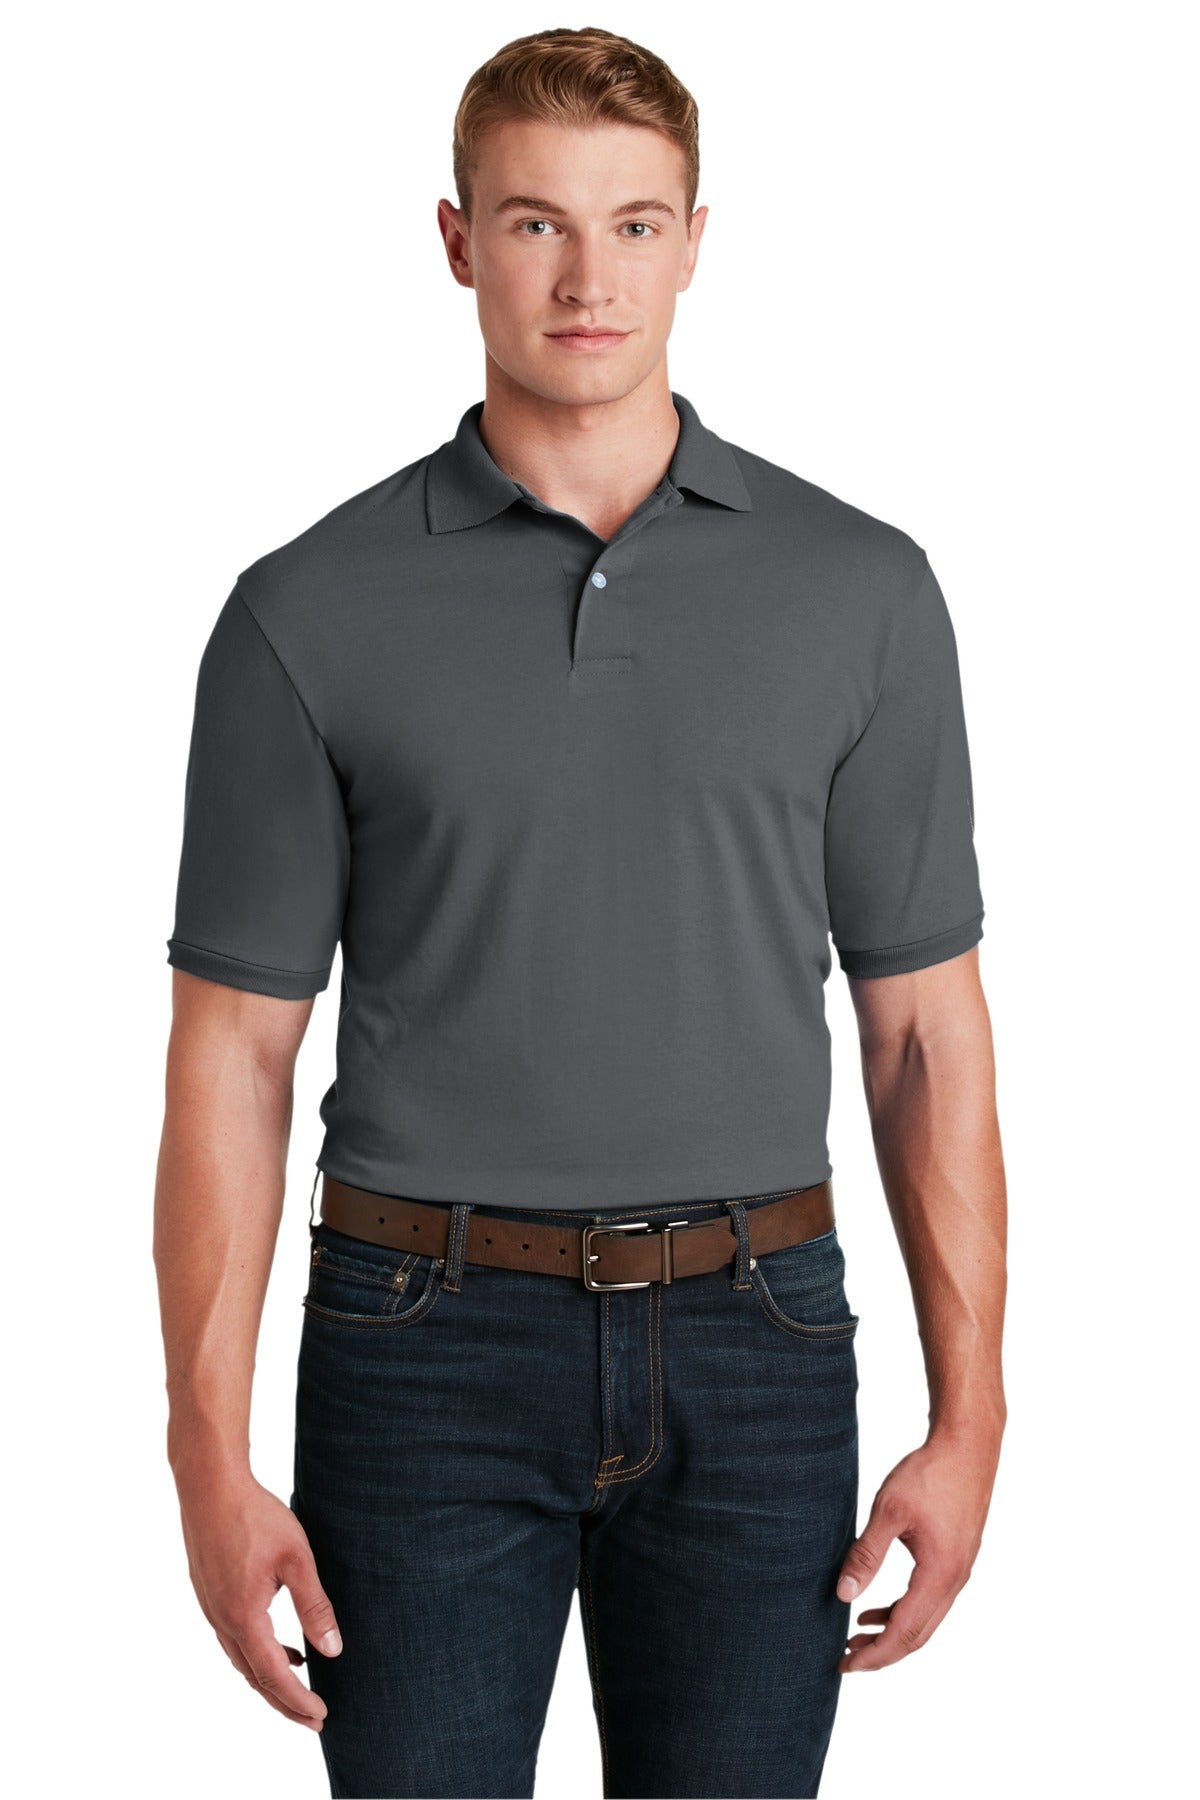 Jerzees® - SpotShield™ 5.4-Ounce Jersey Knit Sport Shirt. 437M